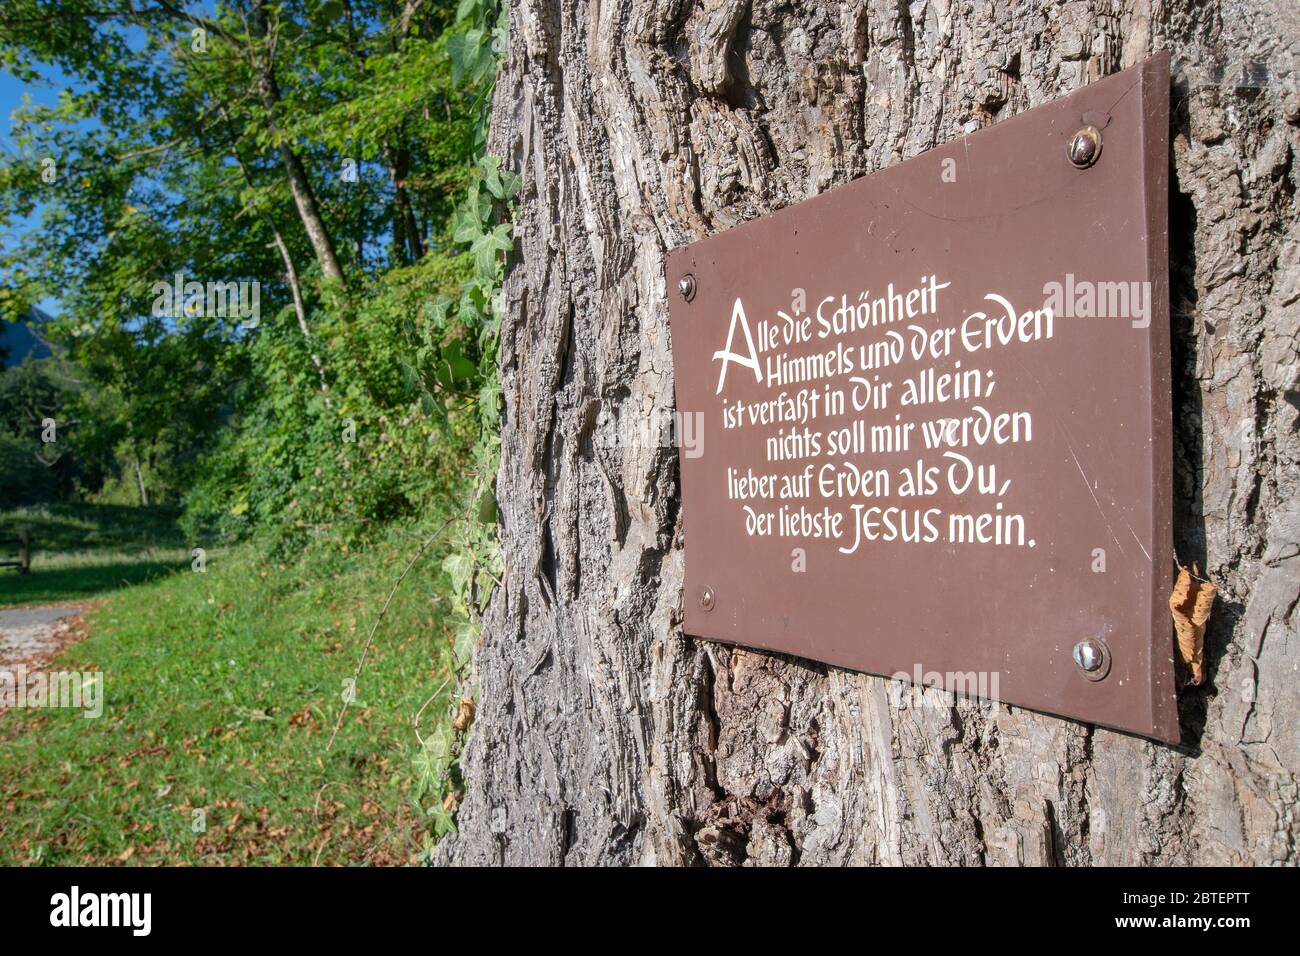 Tafel am Baum in der Nähe der Wallfahrtskirche in Raiten - Schleching Stock  Photo - Alamy